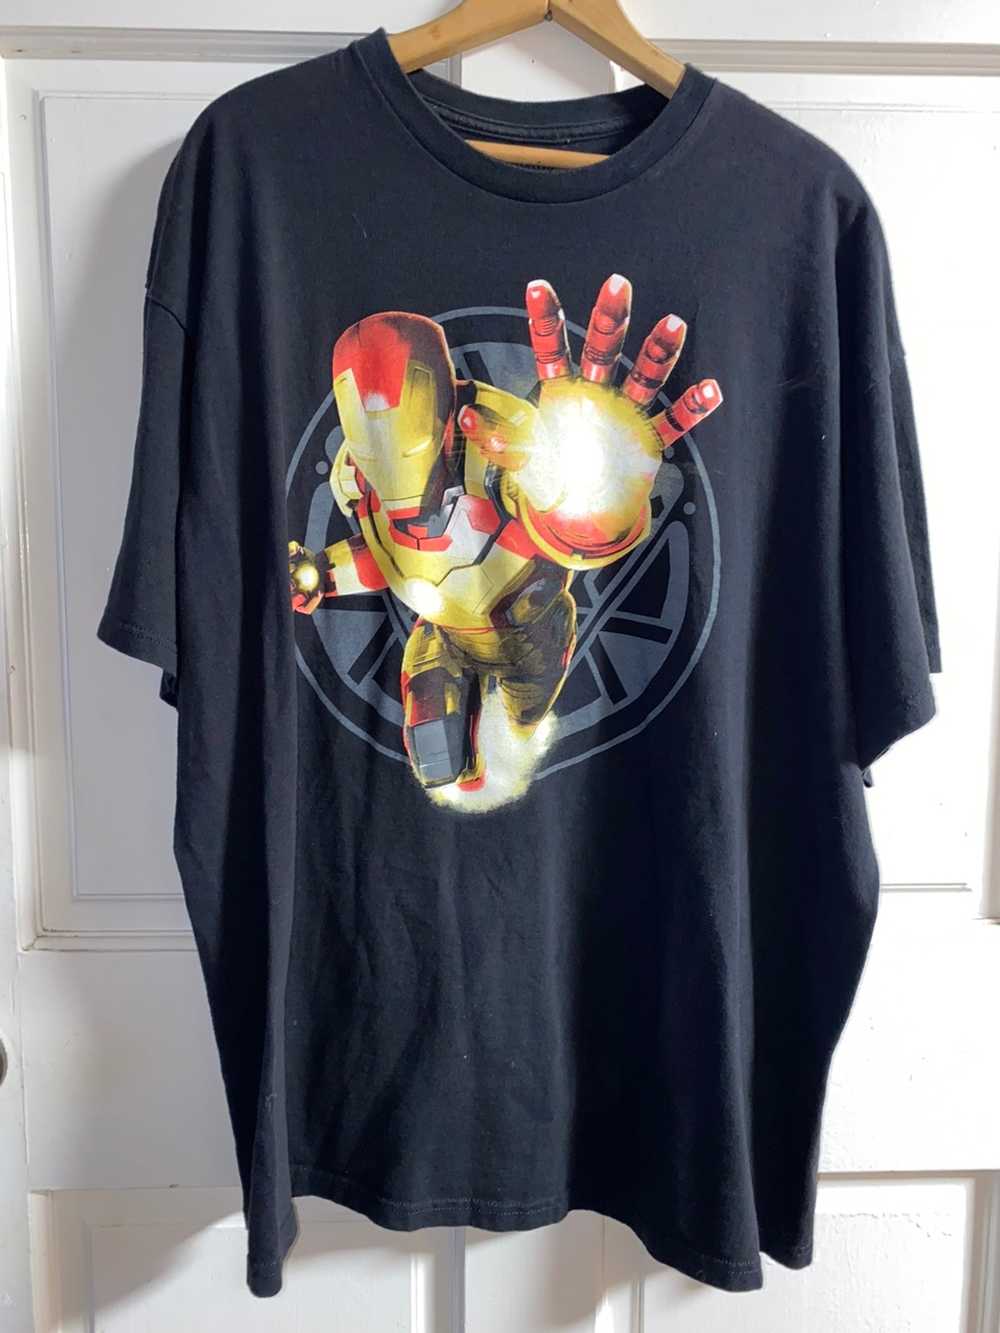 Marvel Comics Iron Man 3 Tee Shirt - Gem